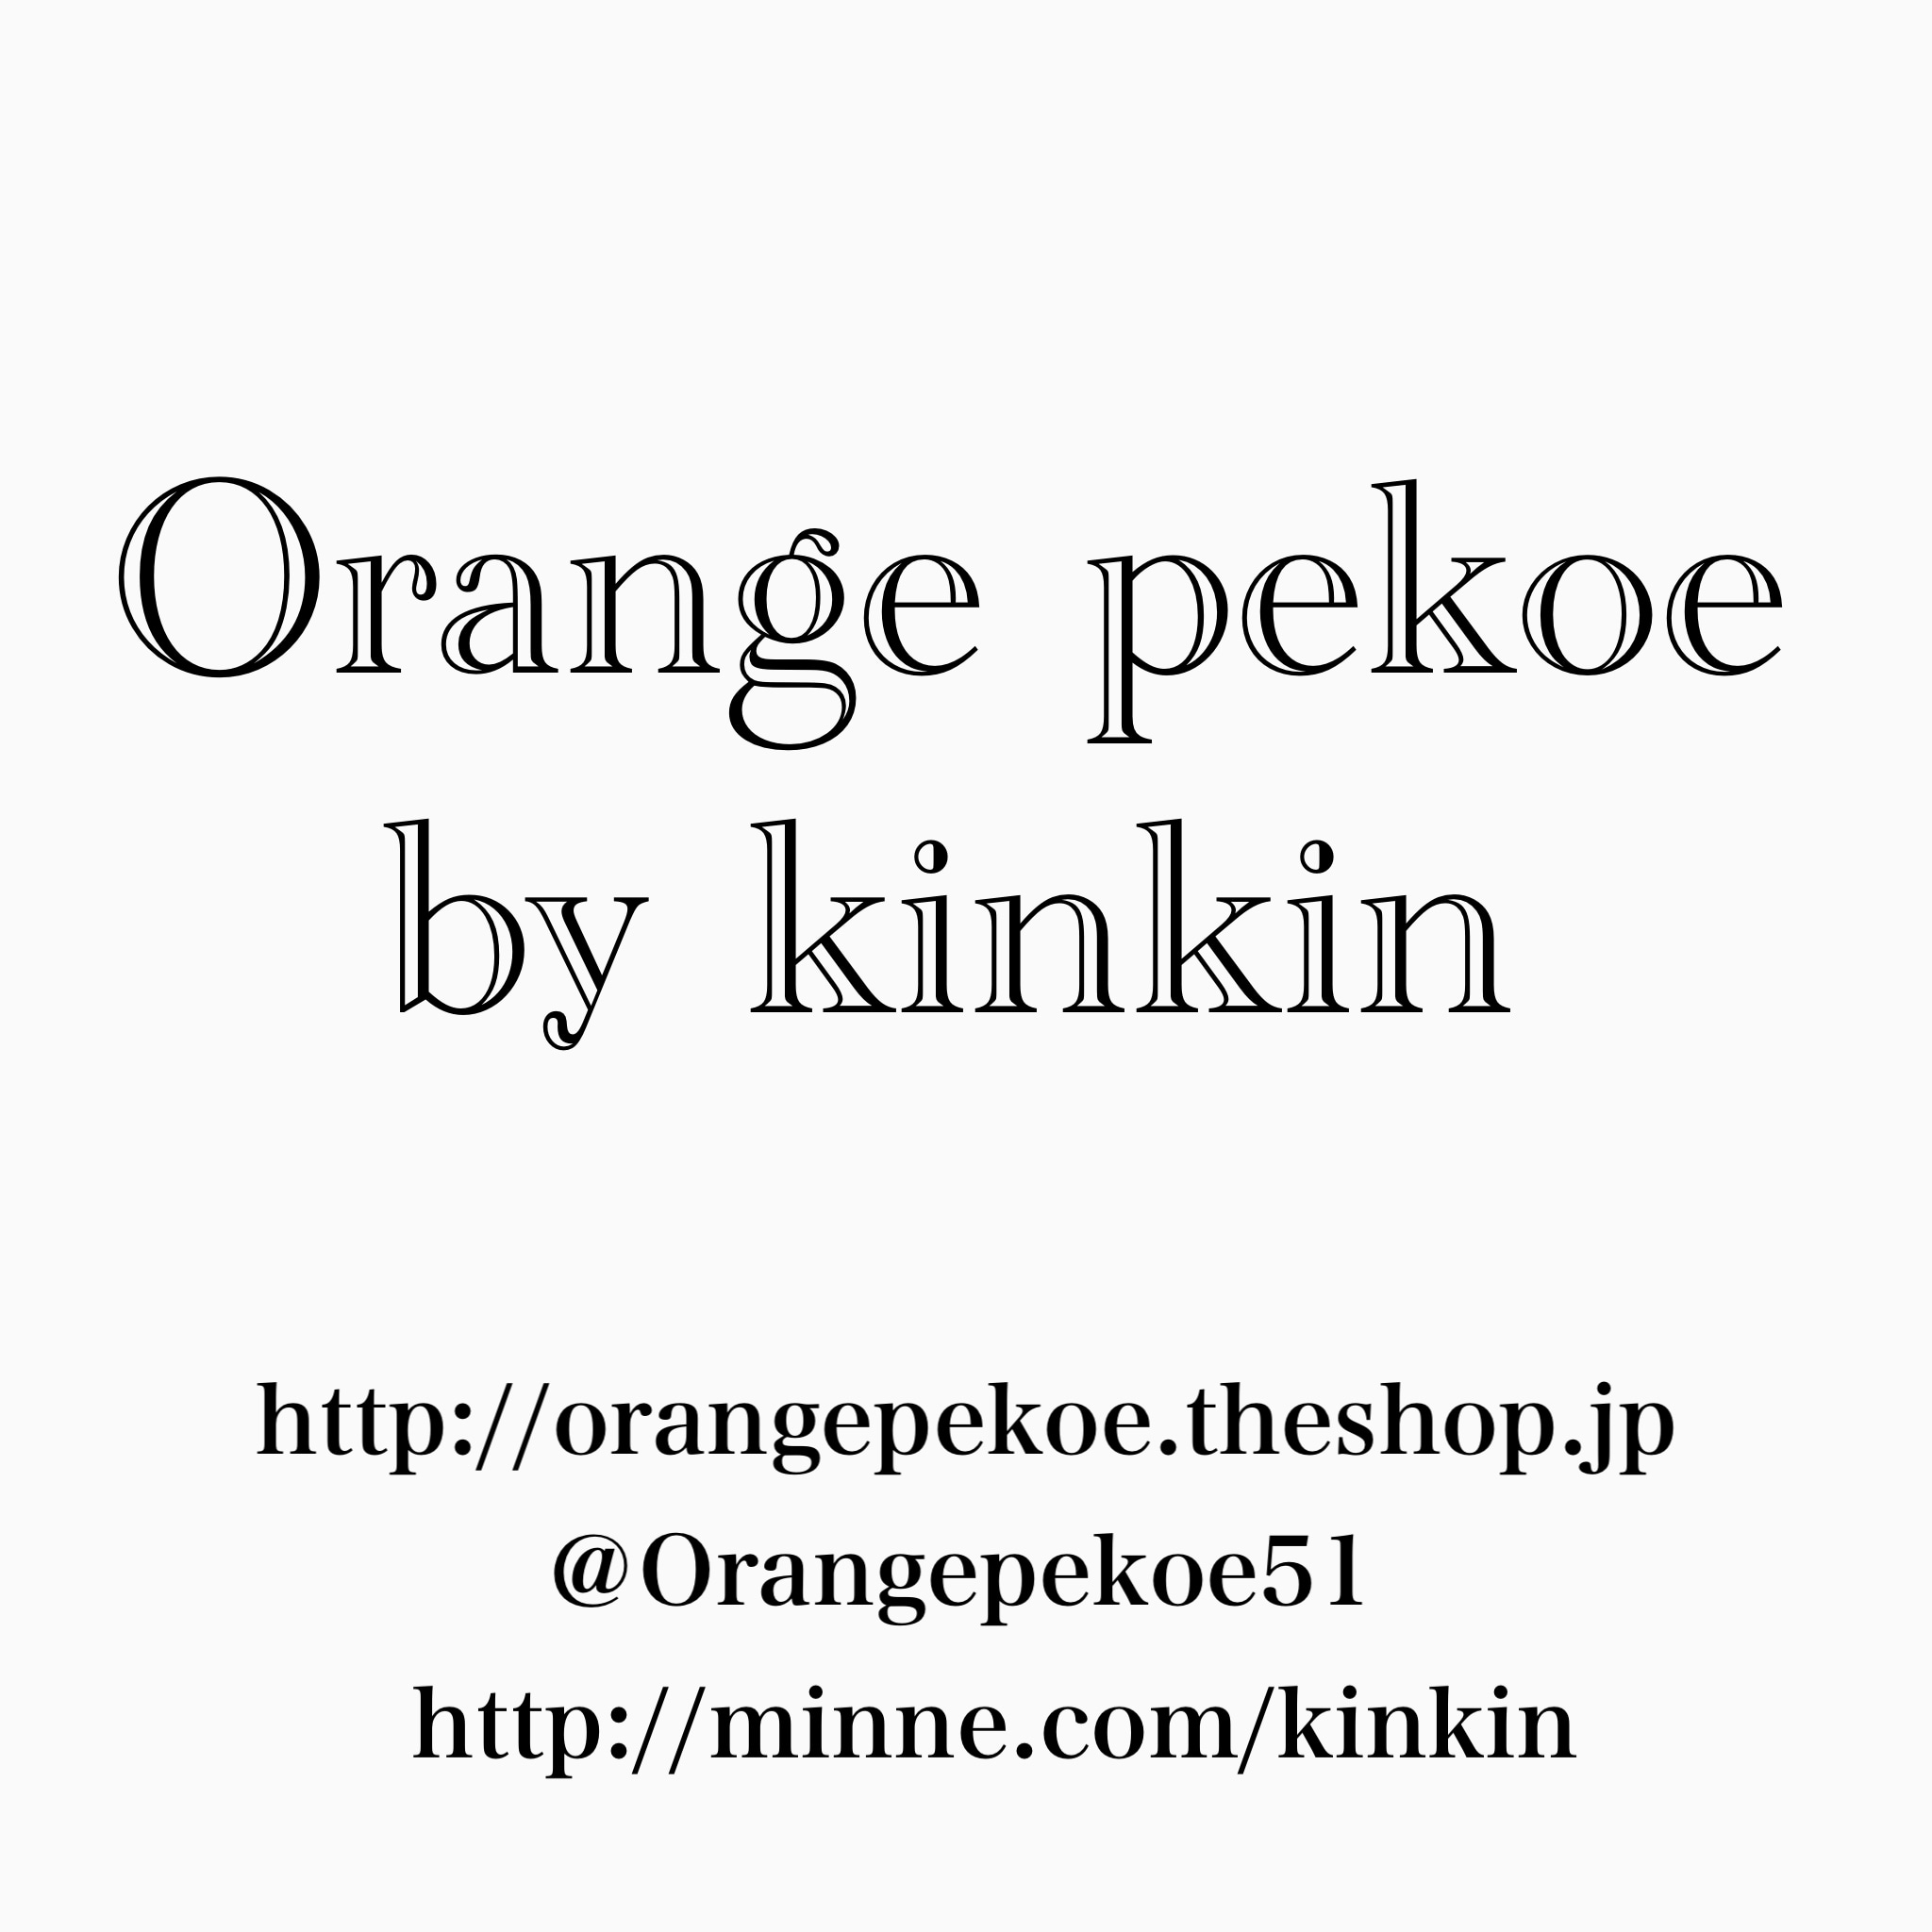 Orange pekoe by kinkin